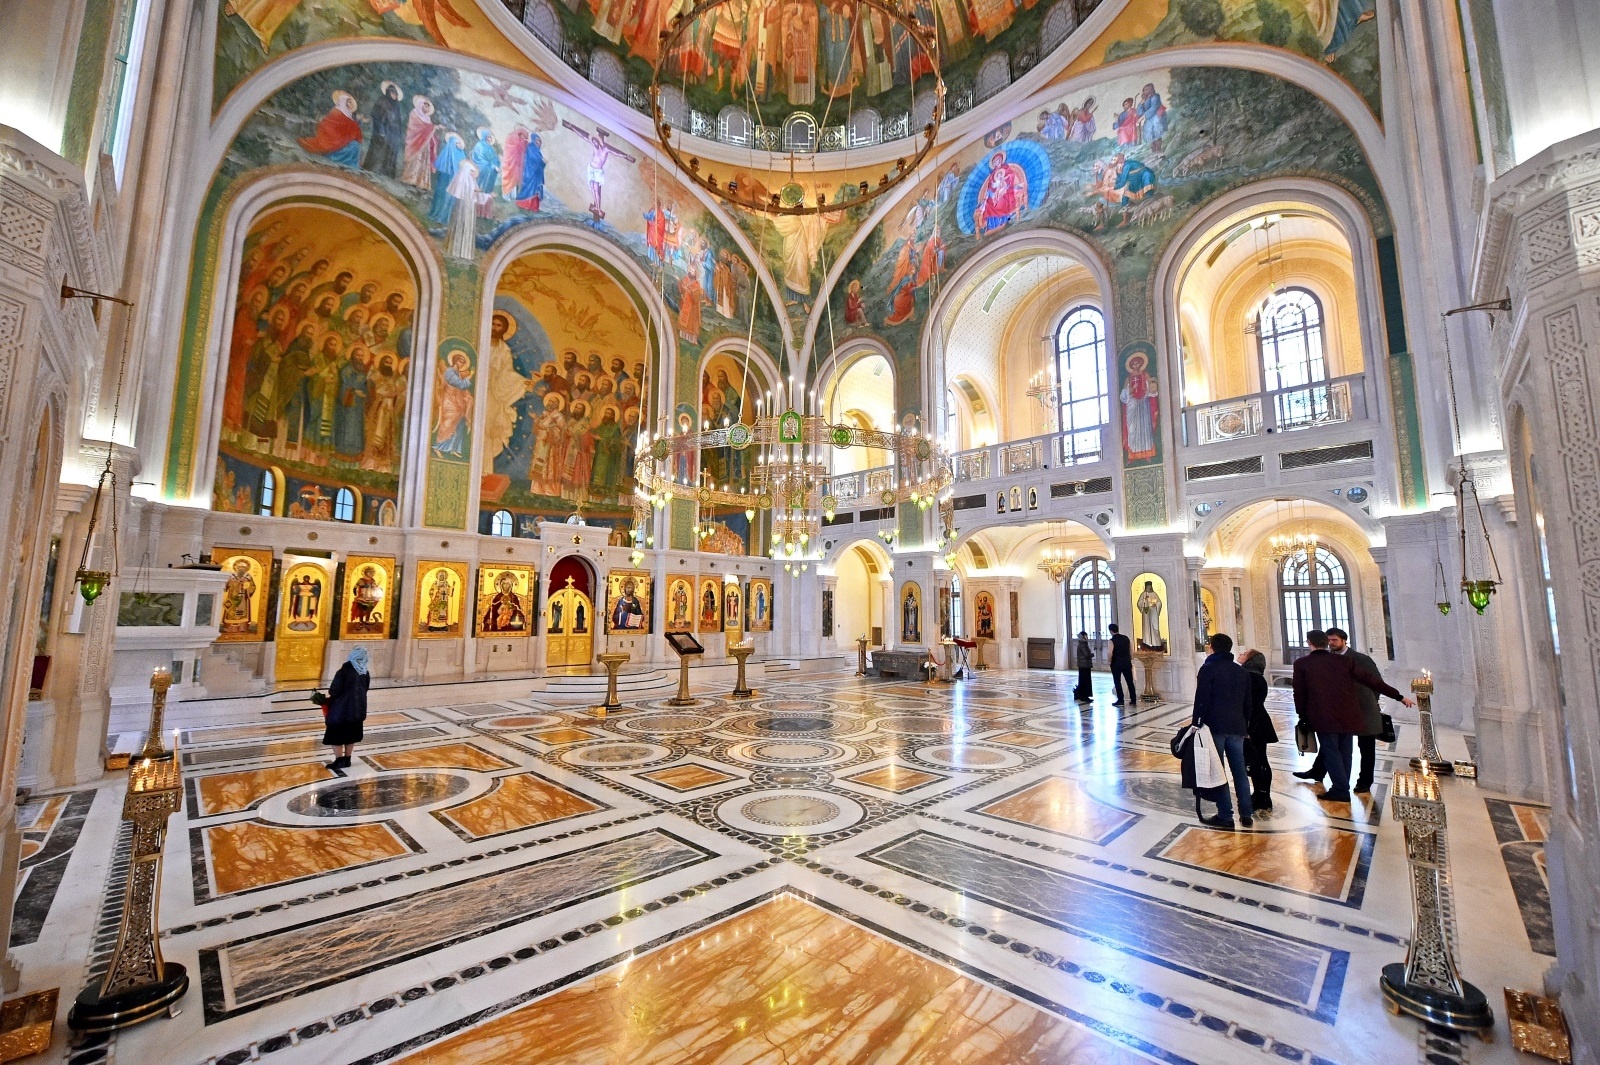 сретенский монастырь в москве адрес